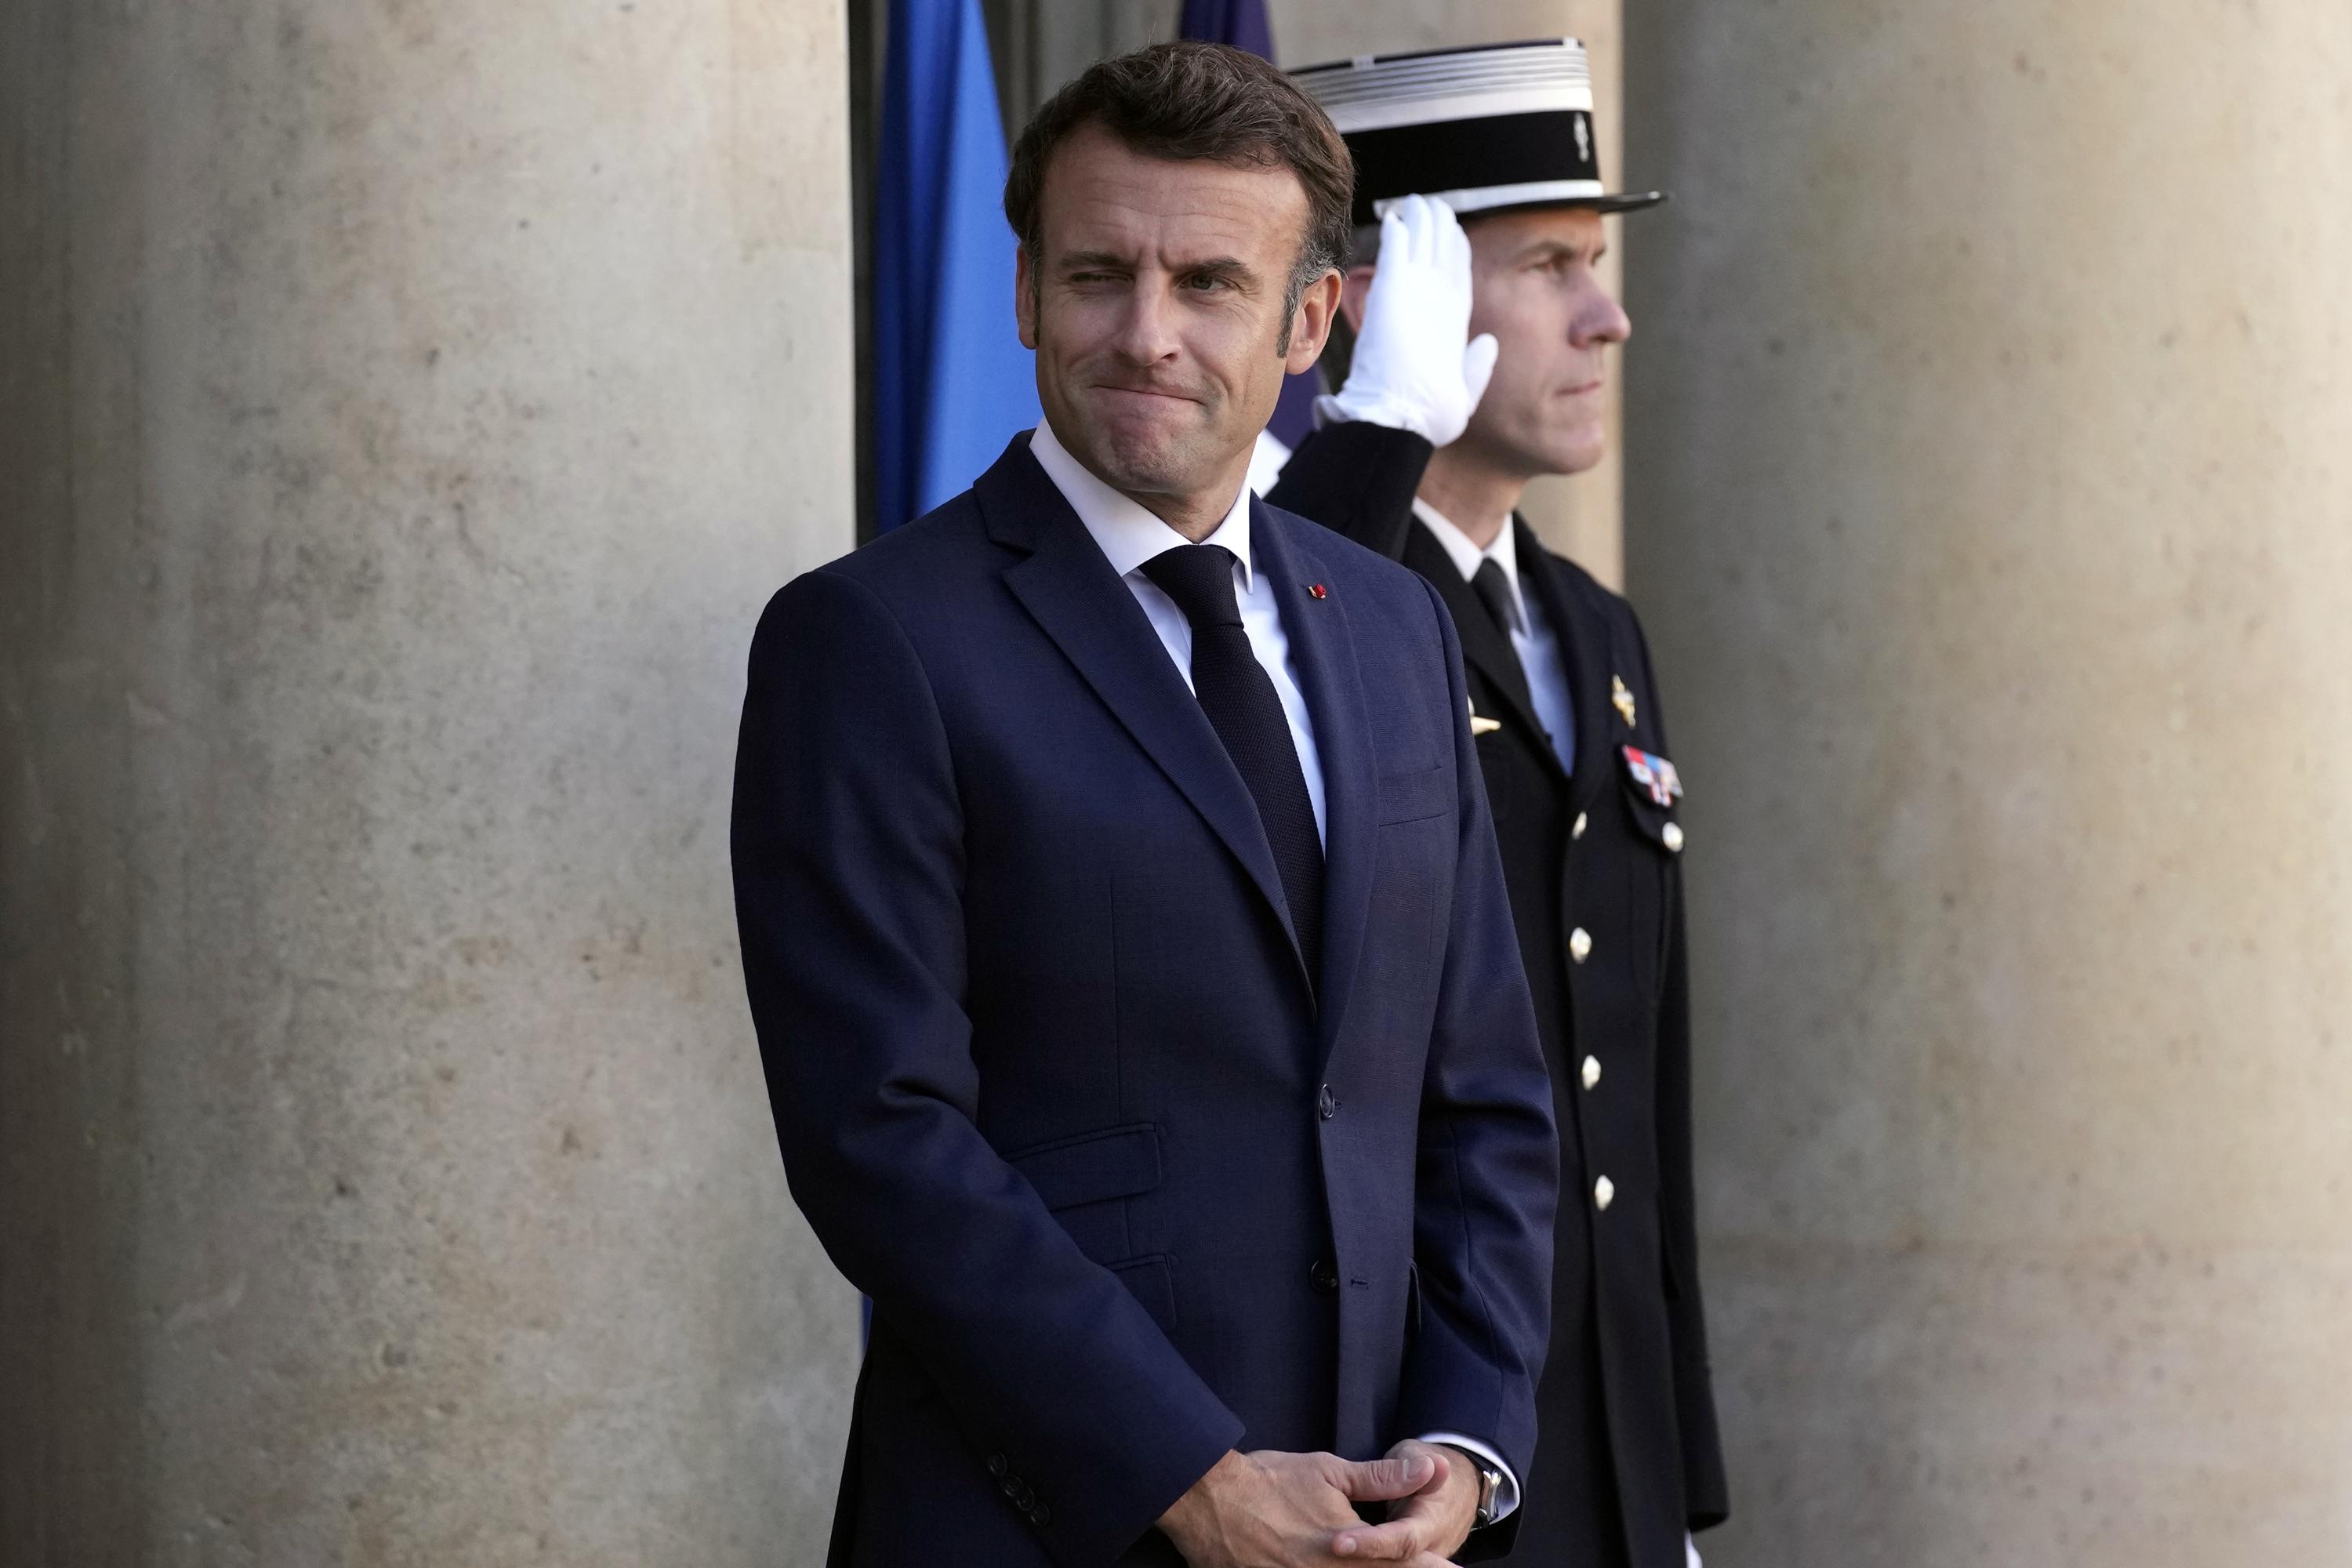 Le président français s’engage à relever l’âge de la retraite de 62 à 65 ans